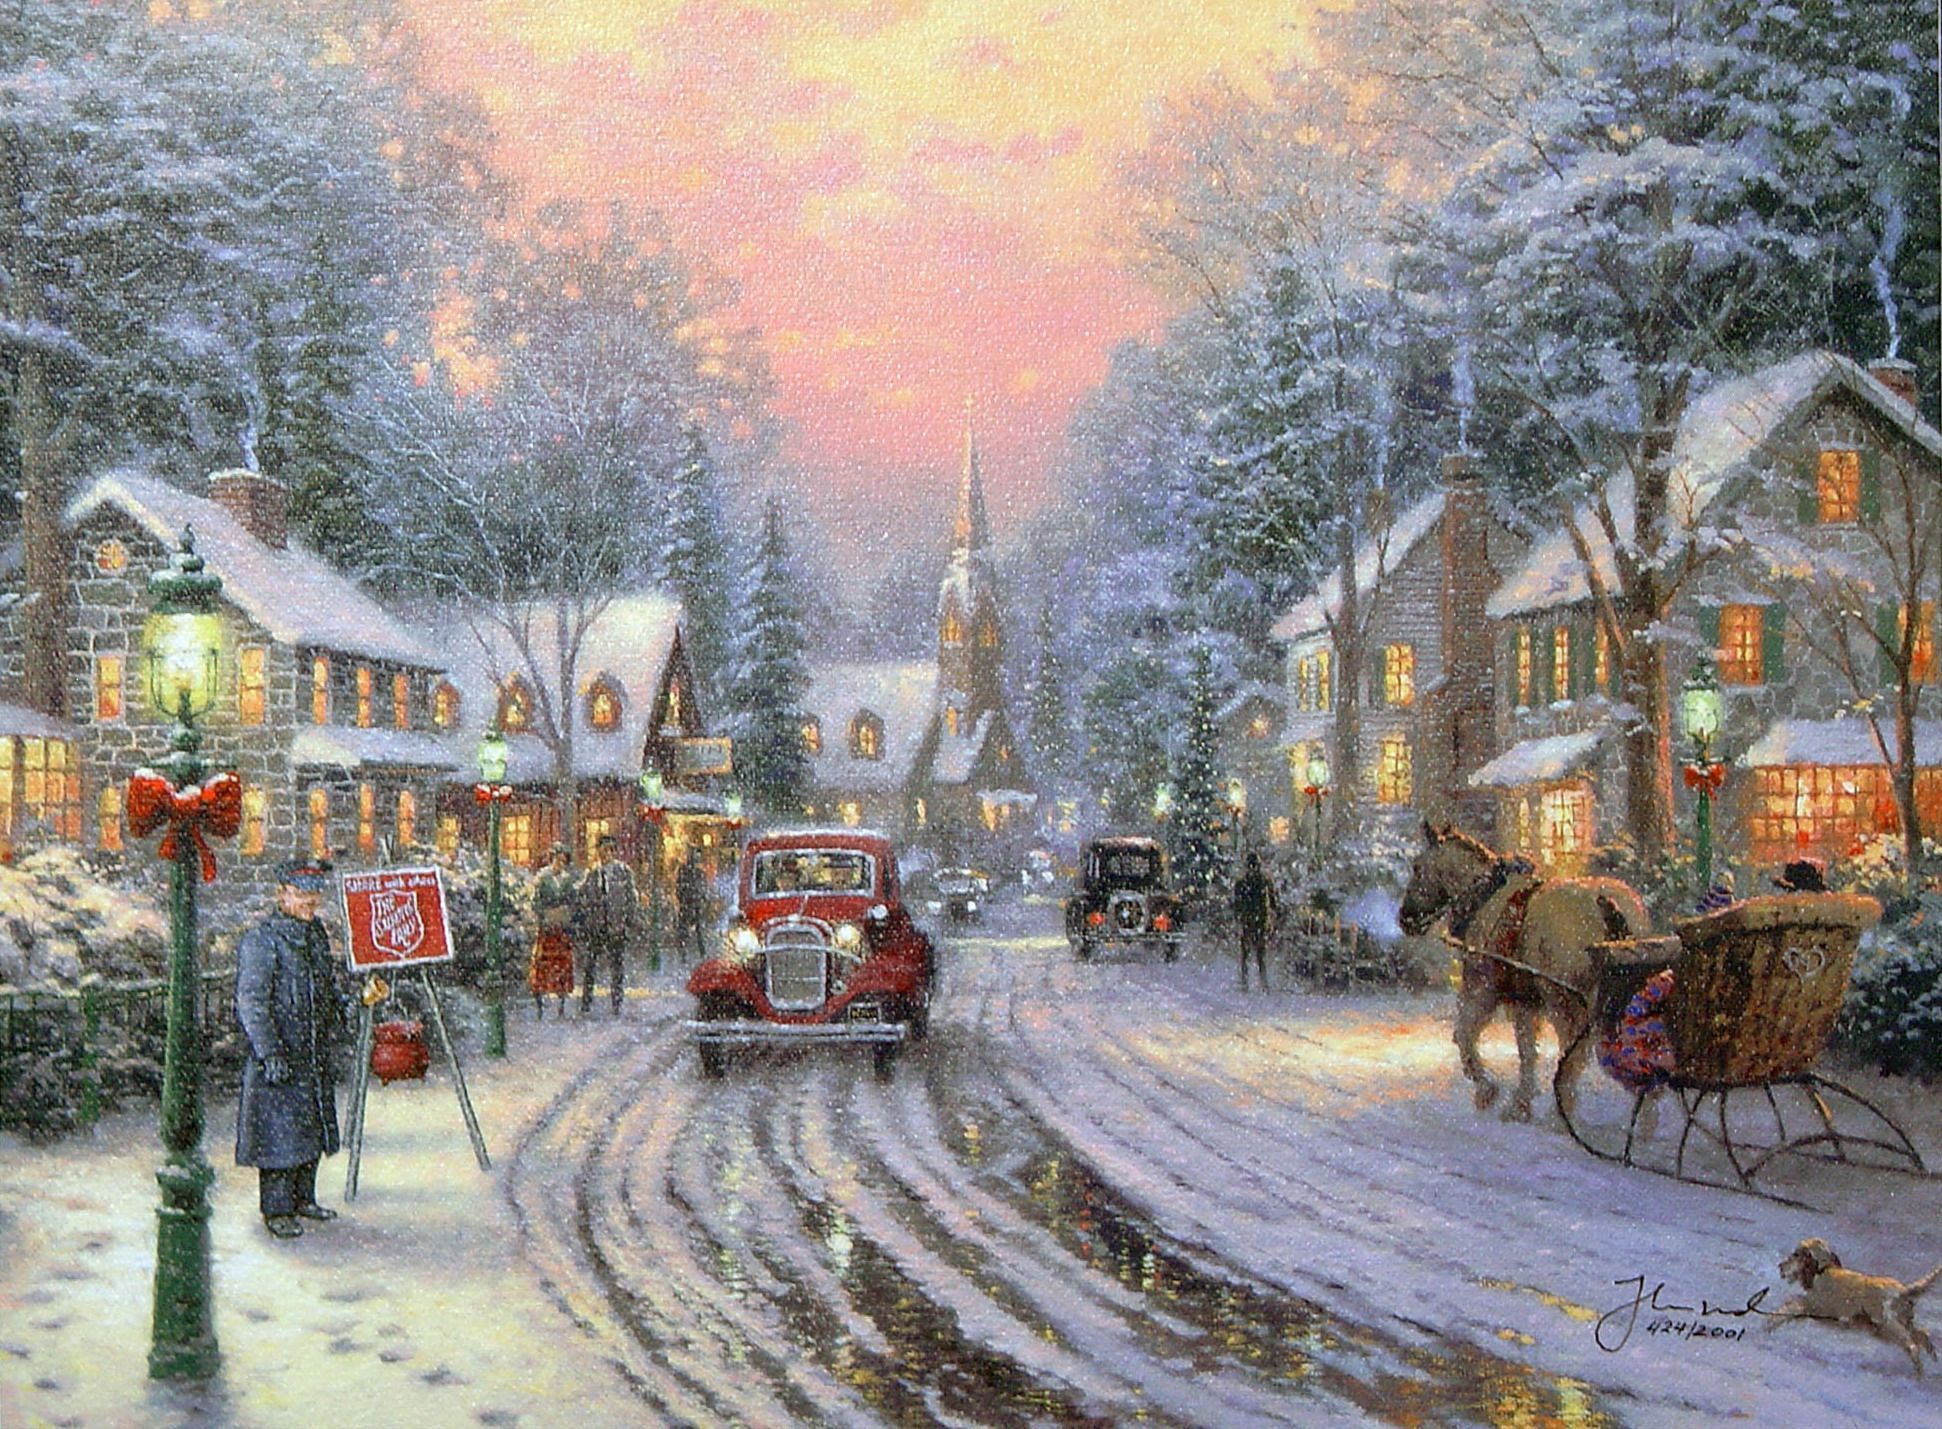 Christmas - Mừng ngày lễ Giáng sinh bằng cách xem những hình ảnh đầy màu sắc và rực rỡ. Chúc mừng cùng với niềm vui của những món quà, cây thông và ánh đèn lấp lánh trên toàn thế giới.